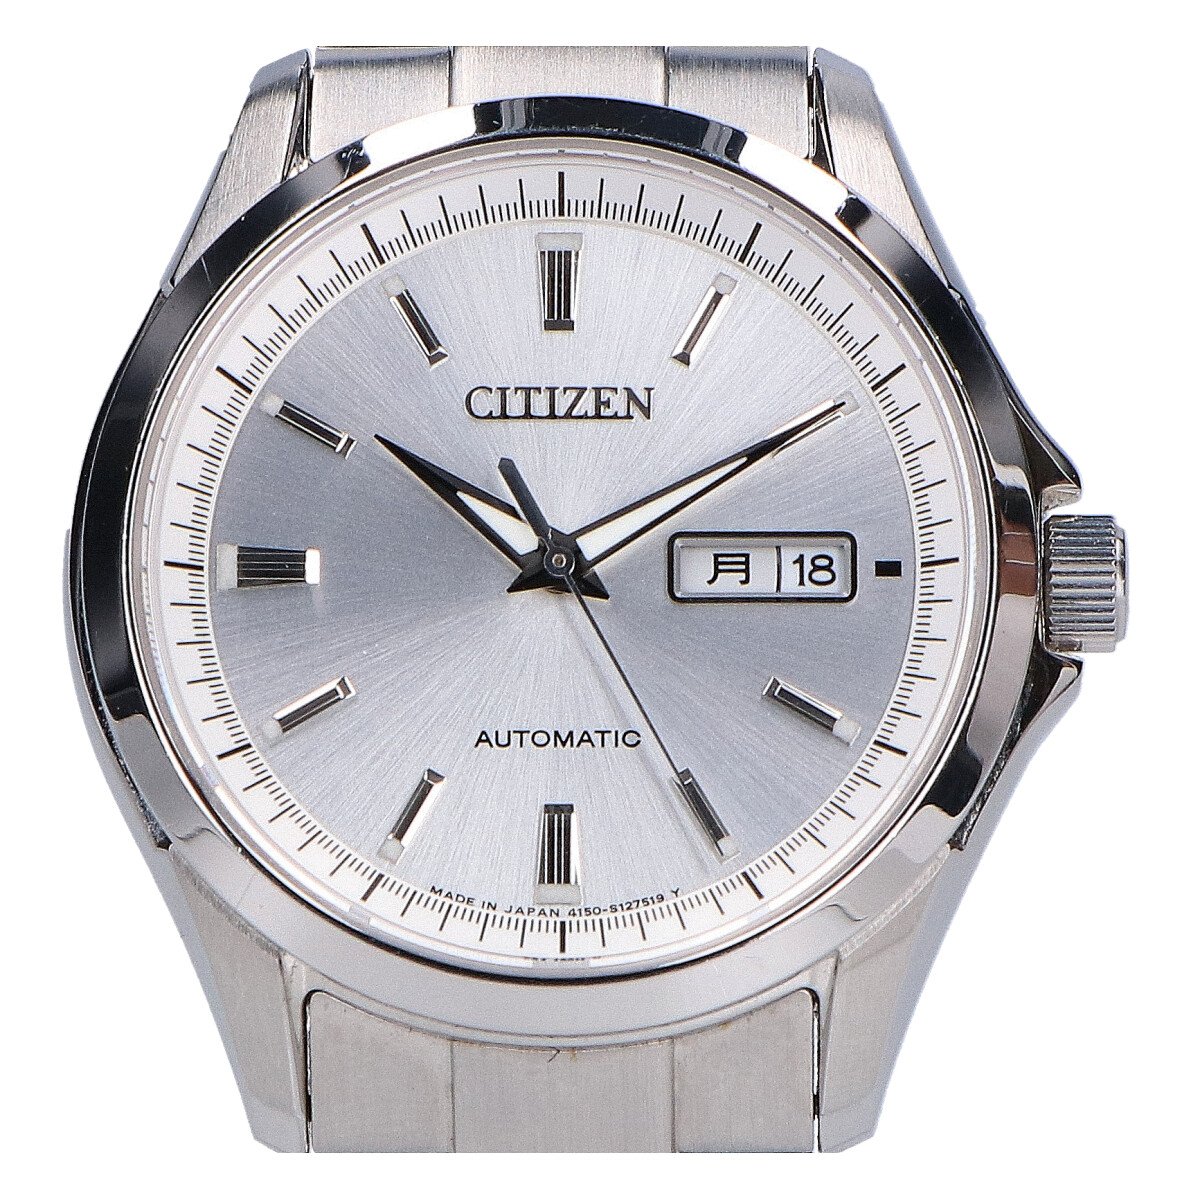 シチズンのNP4040-54A Cal.4150-S088674 シチズンメカニカル デイデイト シースルーバック 自動巻き腕時計の買取実績です。